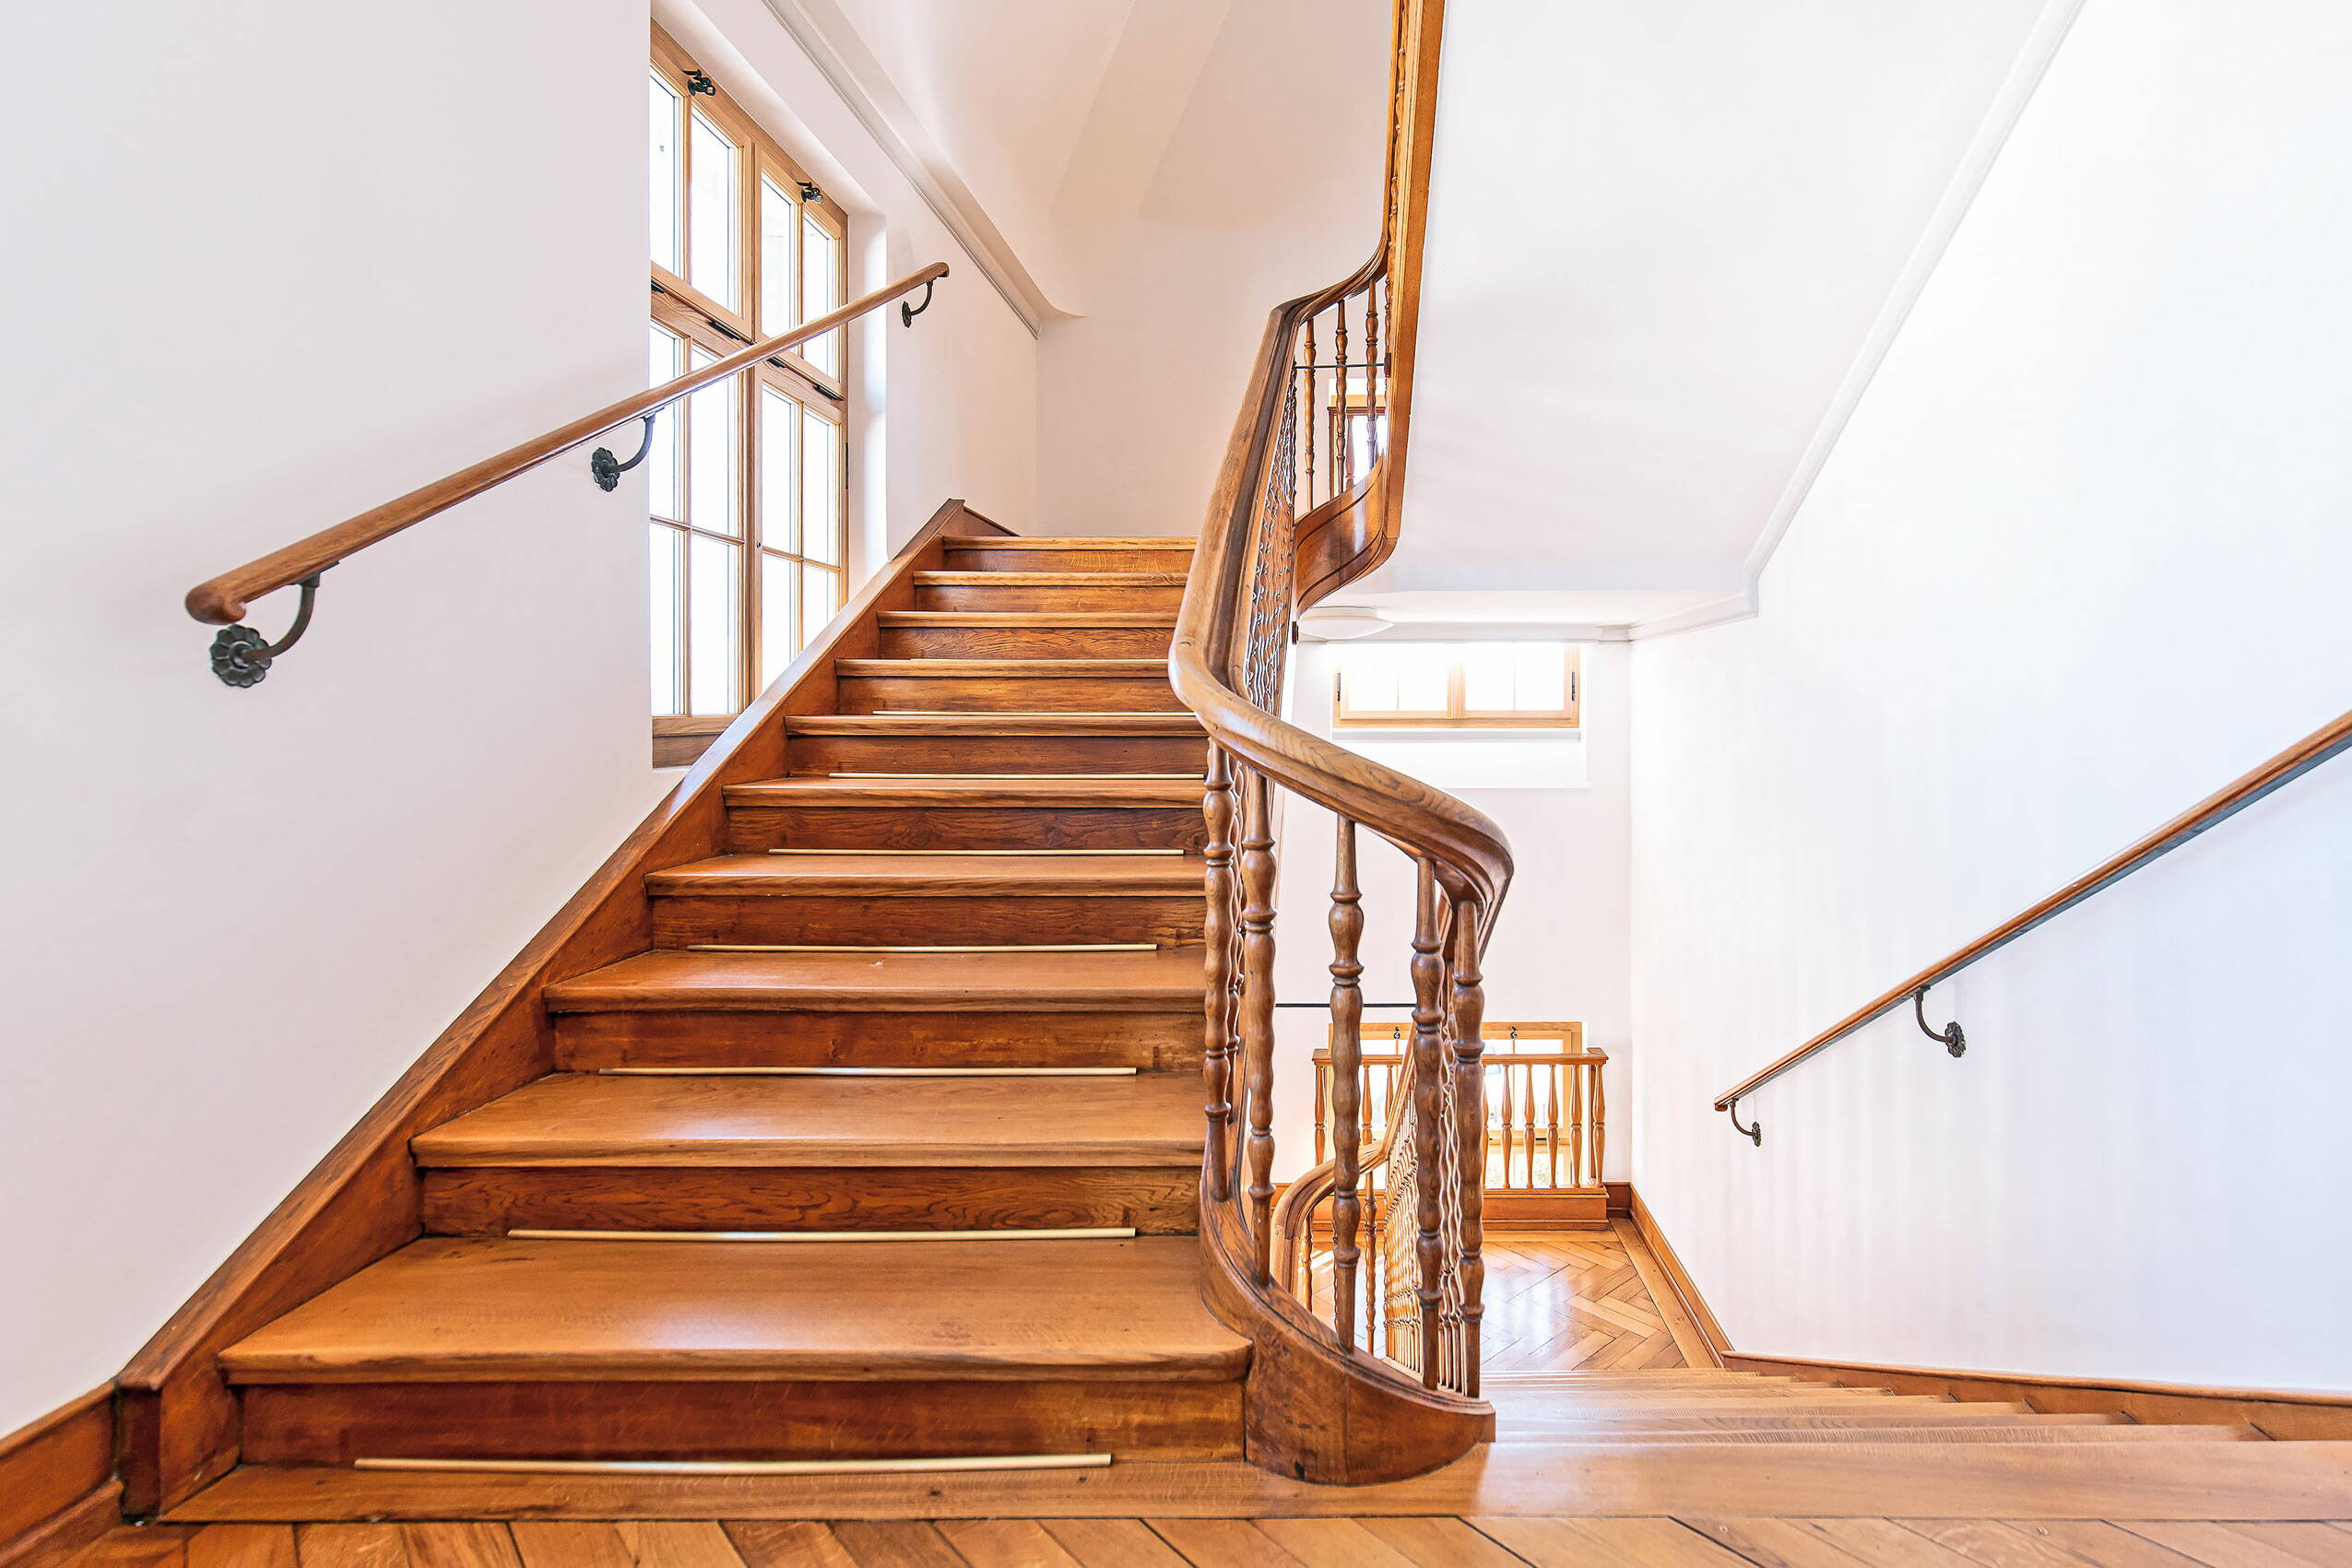 Zoom: Treppenhaus in einem Altbau mit Treppen und Geländer aus Holz.